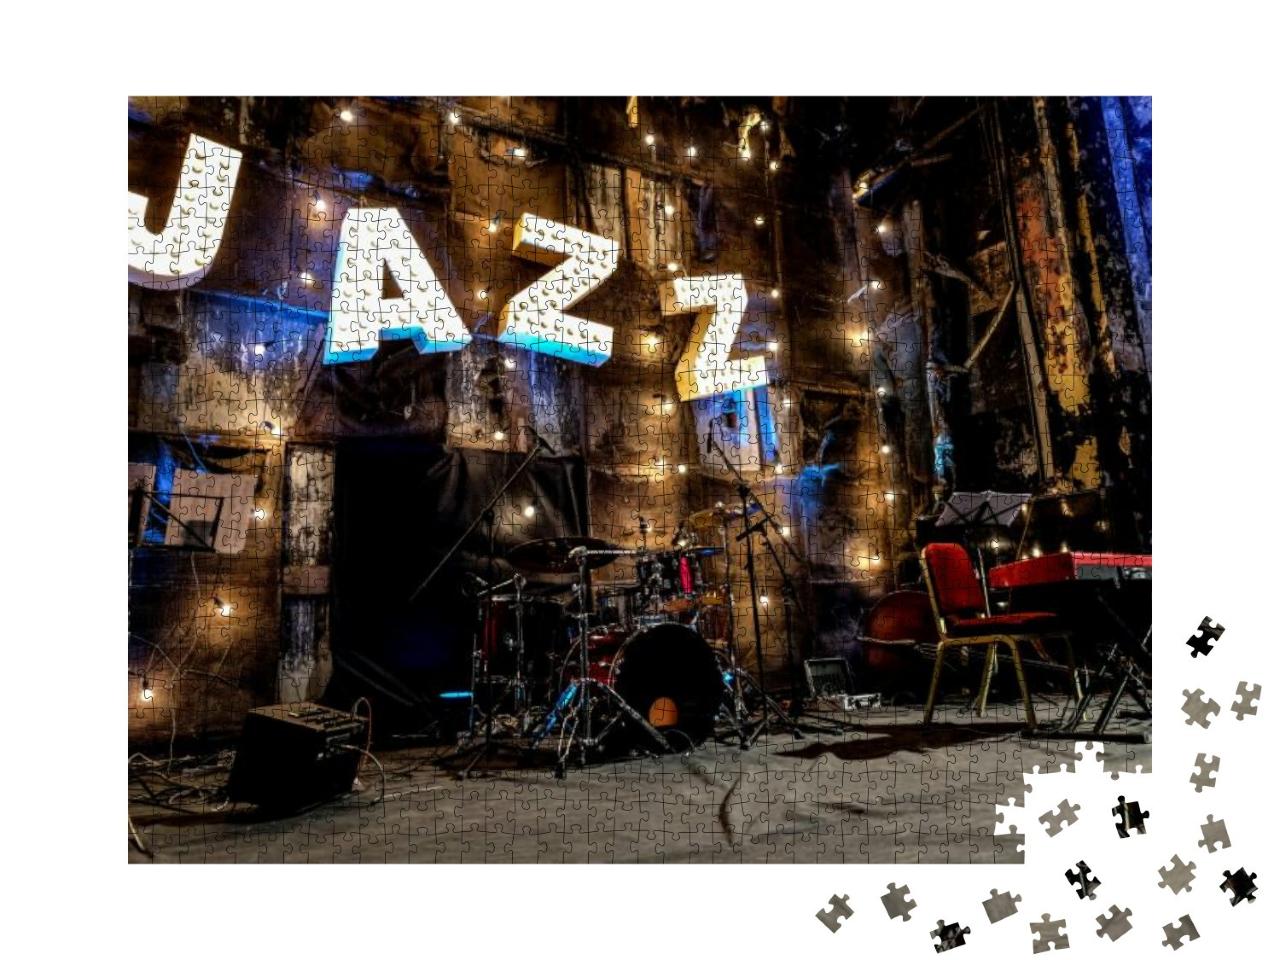 Puzzle 1000 Teile „Jazz Bühne, bereit für den Auftritt der Band“